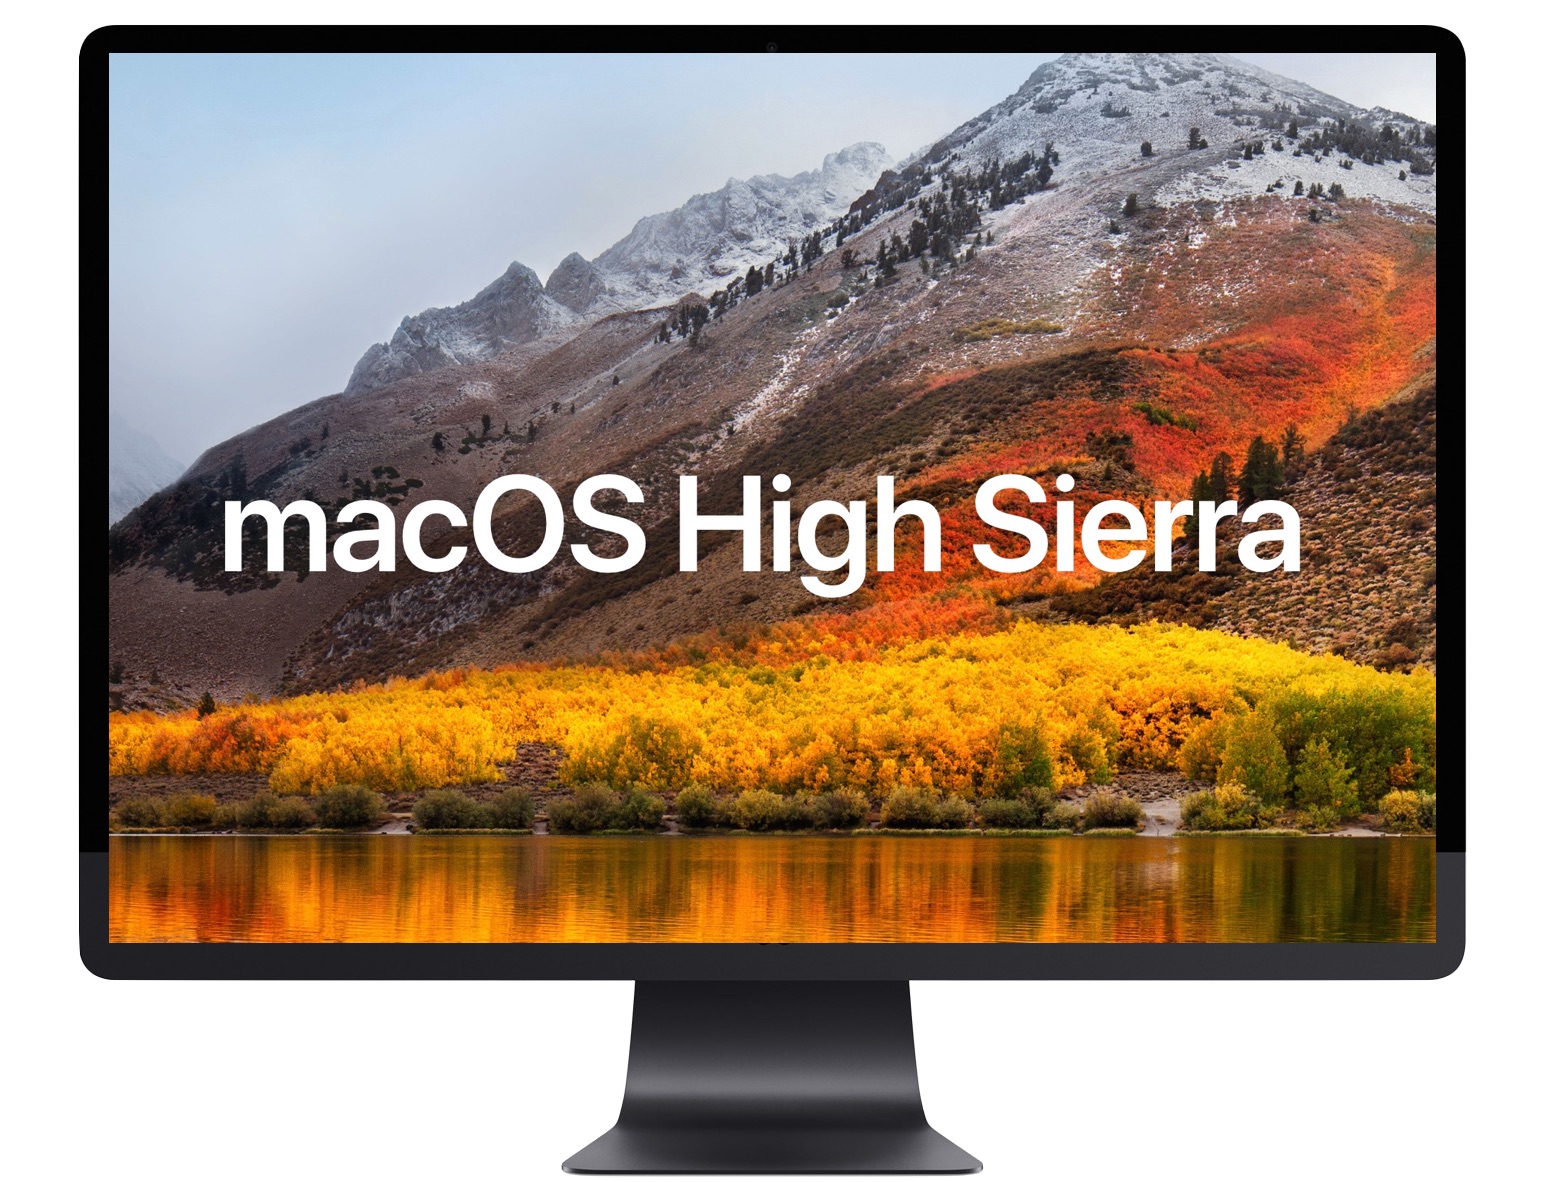 Macos high sierra 10.13 update